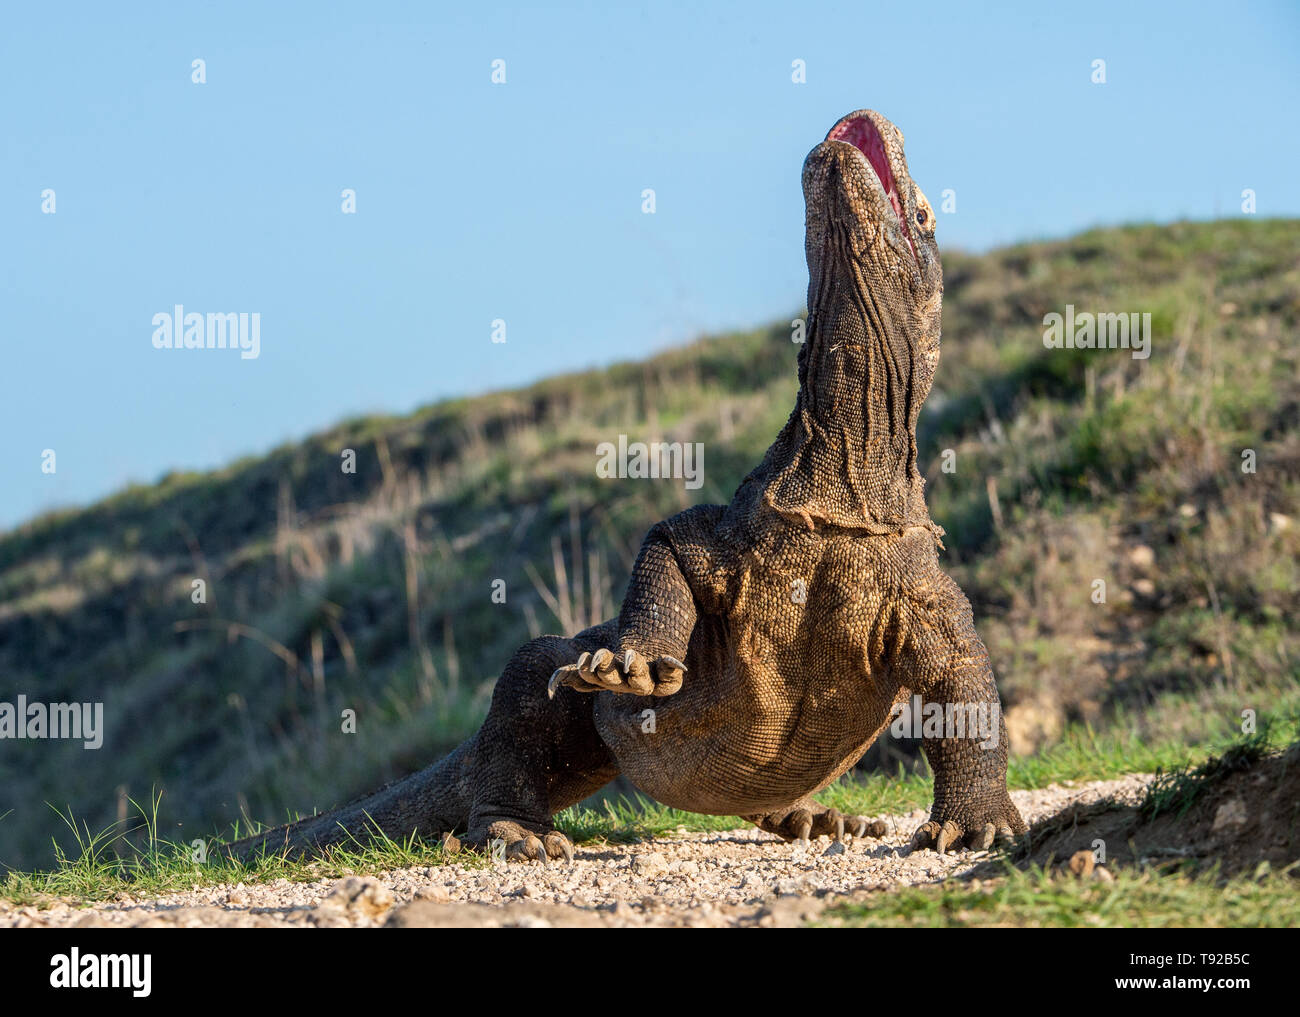 Il drago di Komodo ha sollevato la testa e ha aperto una bocca. Nome scientifico: Varanus komodoensis, è la più grande lucertola vivente nel mondo. Hab naturale Foto Stock